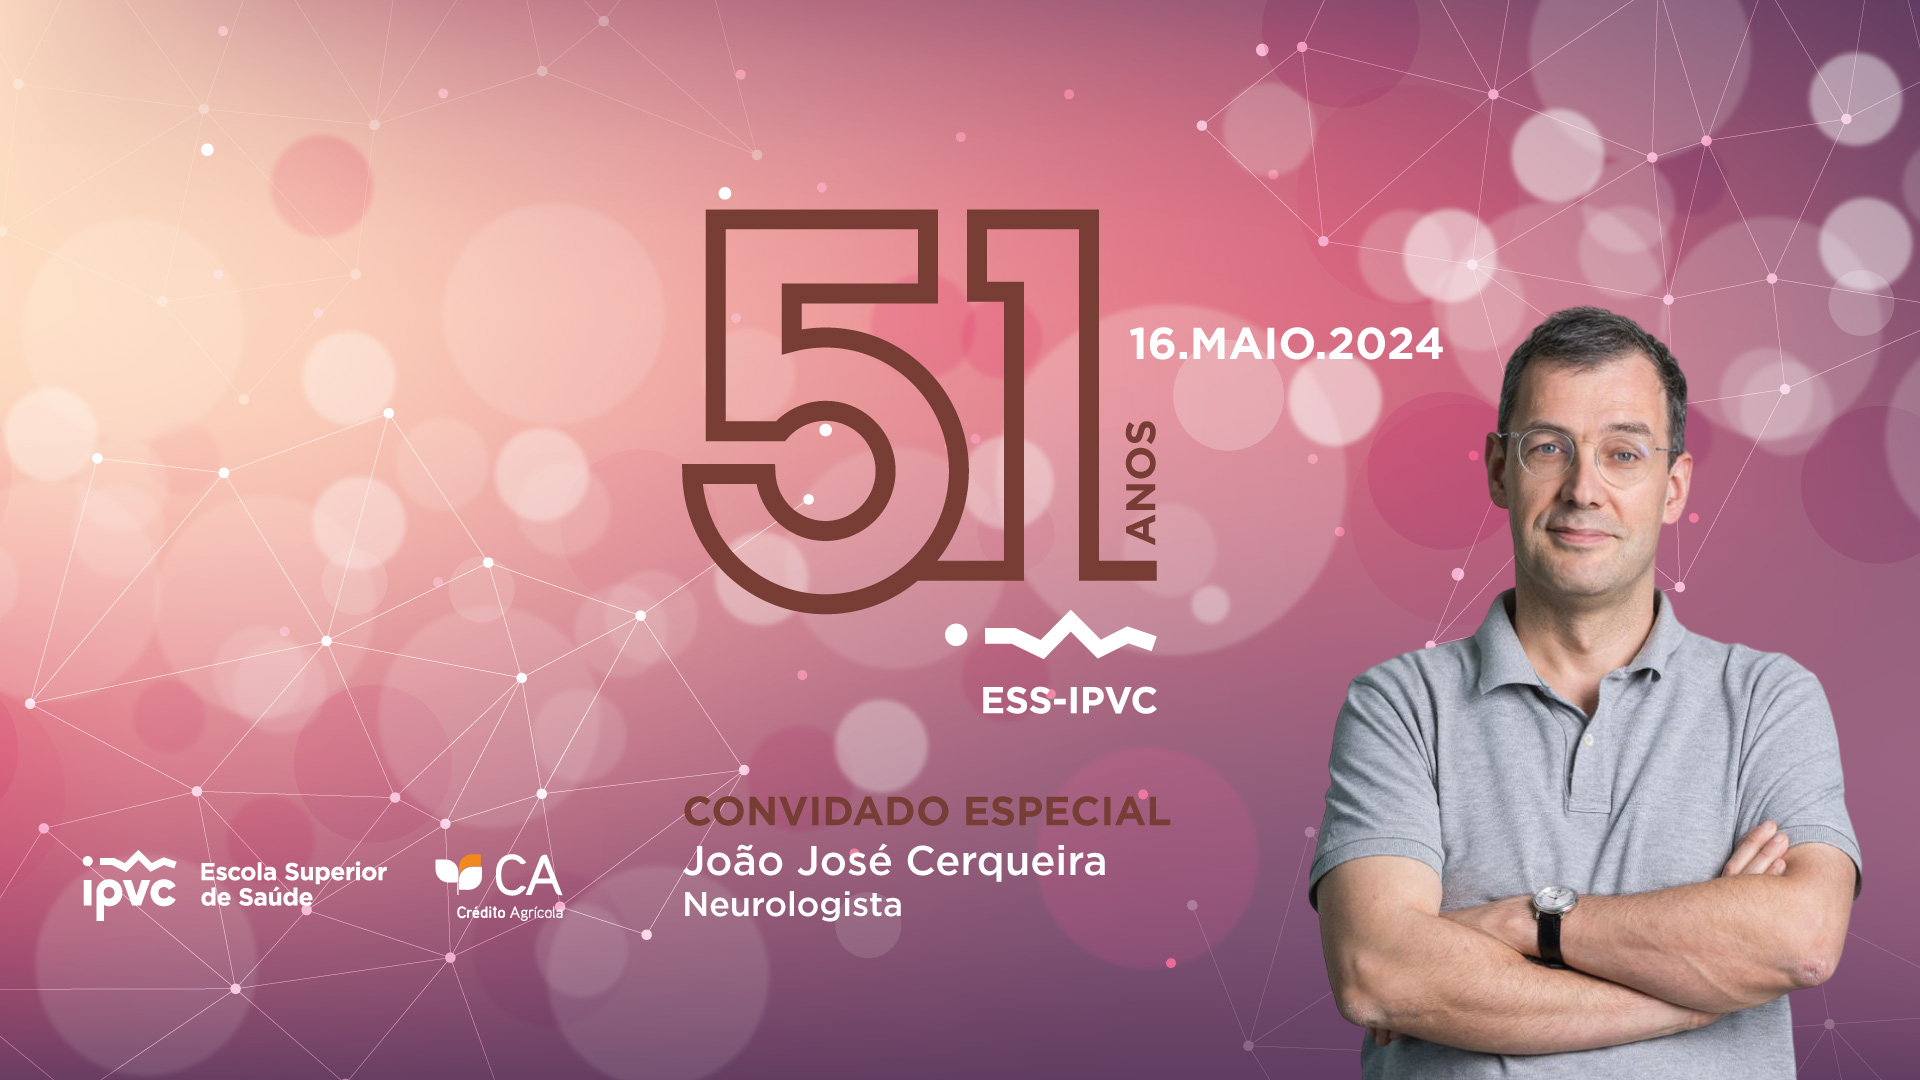 (Português) ESS-IPVC celebra 51 anos